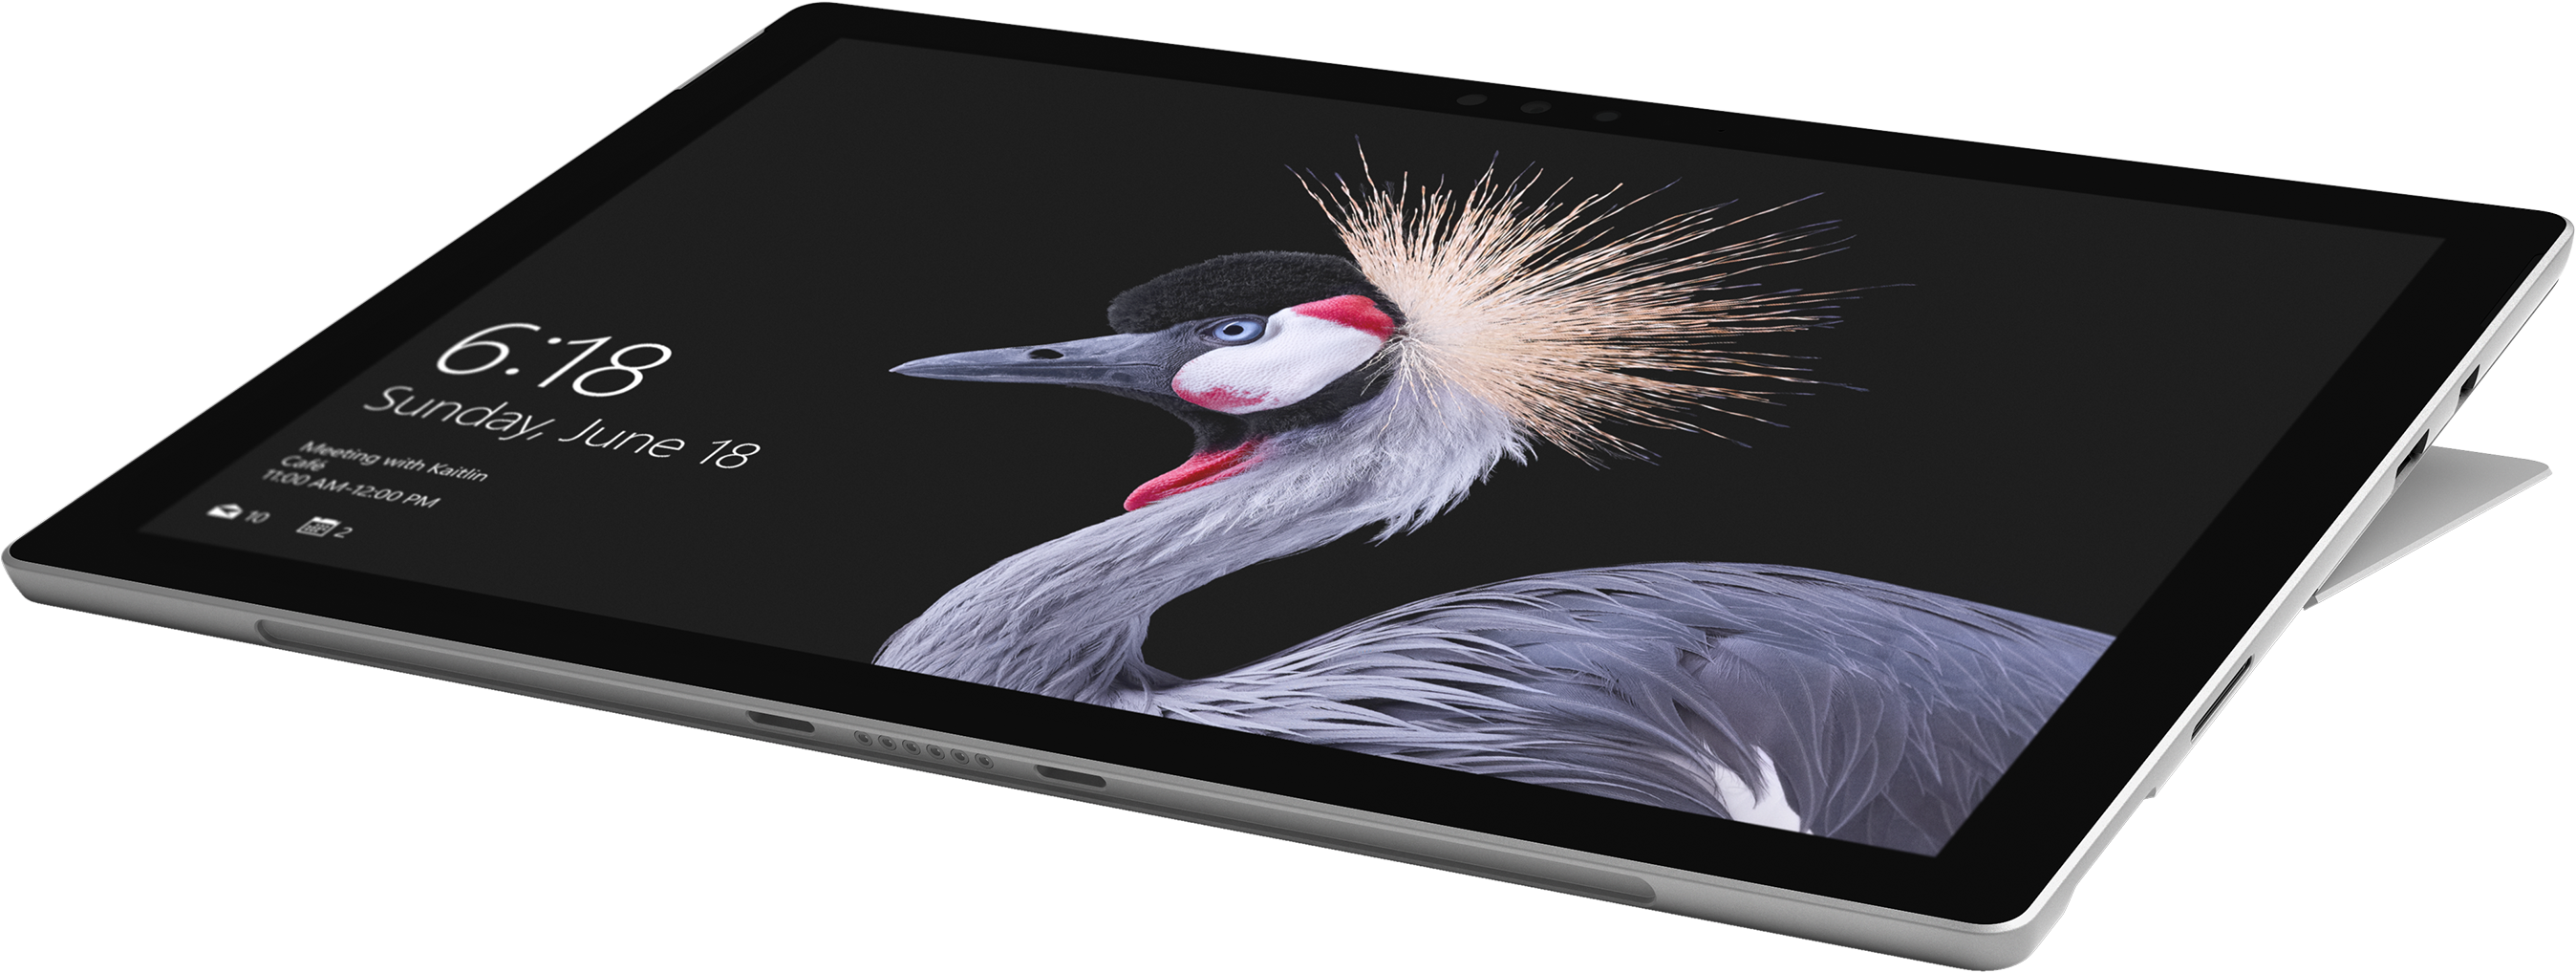 Surface Pro 在宅イラストレーターのパソコンレビュー 絵も文も きみと一緒にポジティブlife